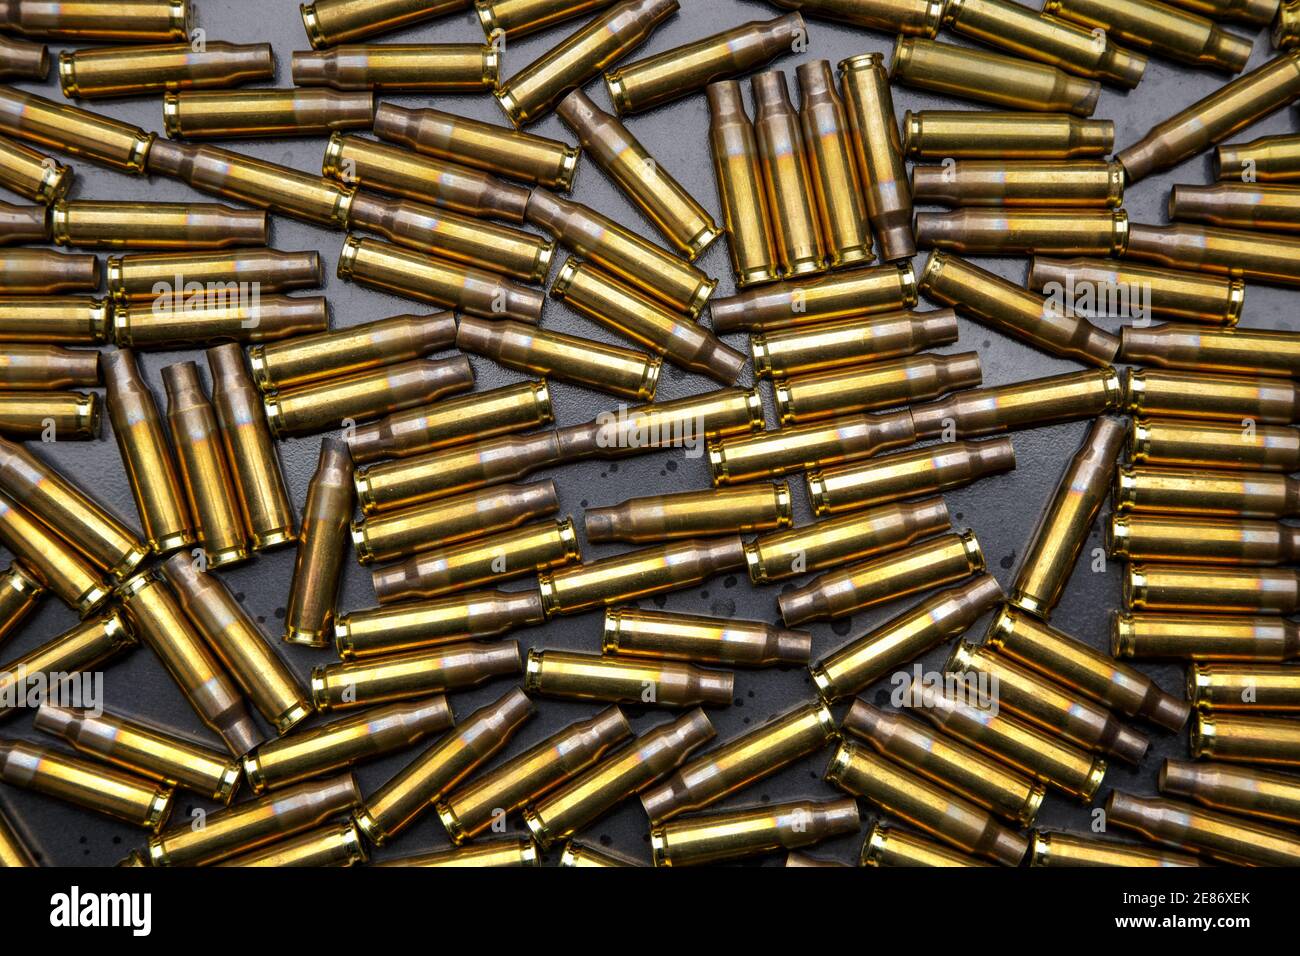 Spent brass ammunition cases Stock Photo - Alamy